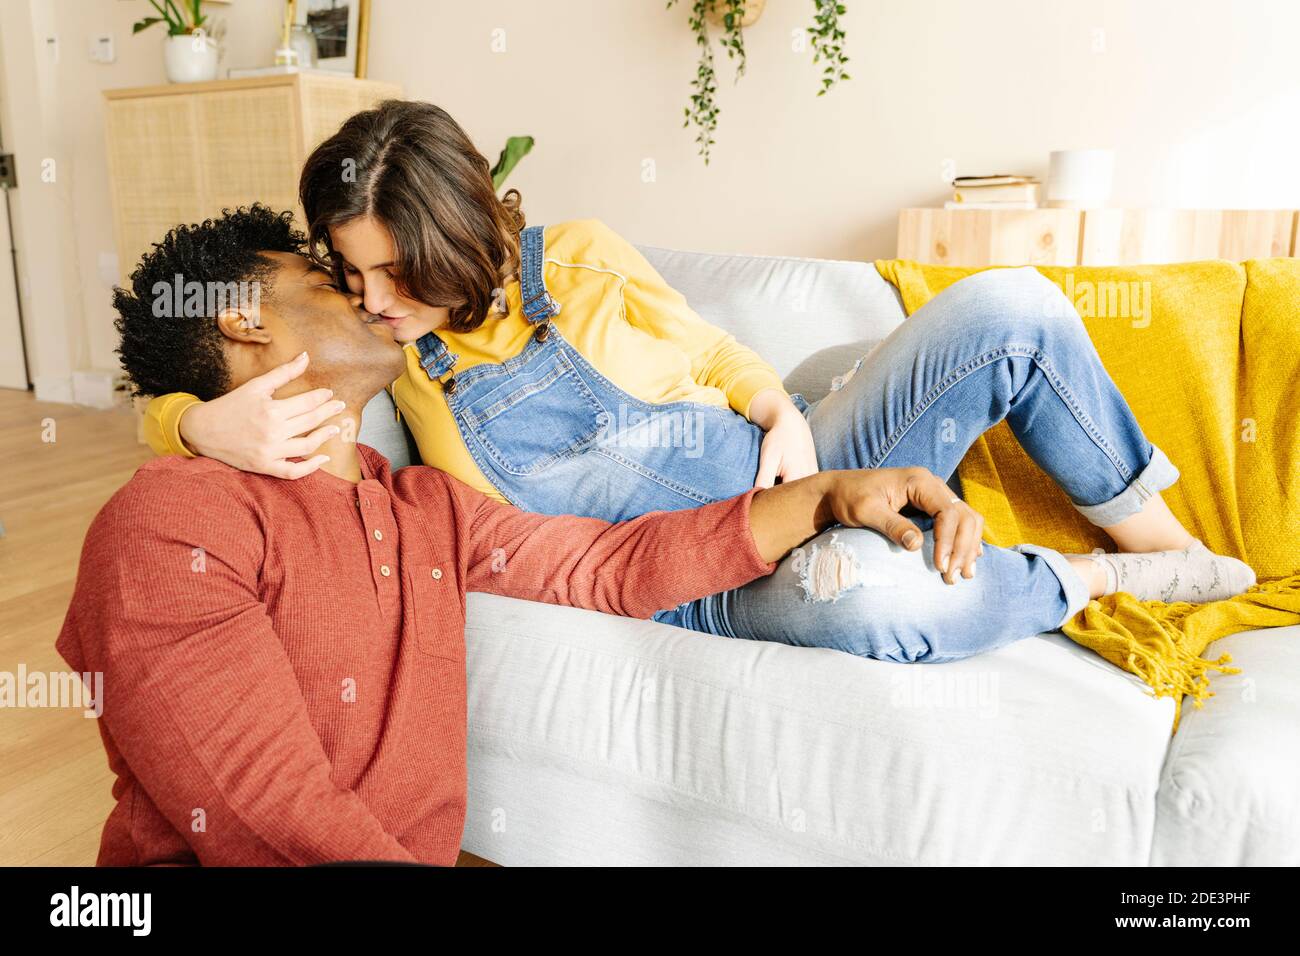 Mari embrassant sa femme enceinte sur un canapé. Concept de couple interracial Banque D'Images